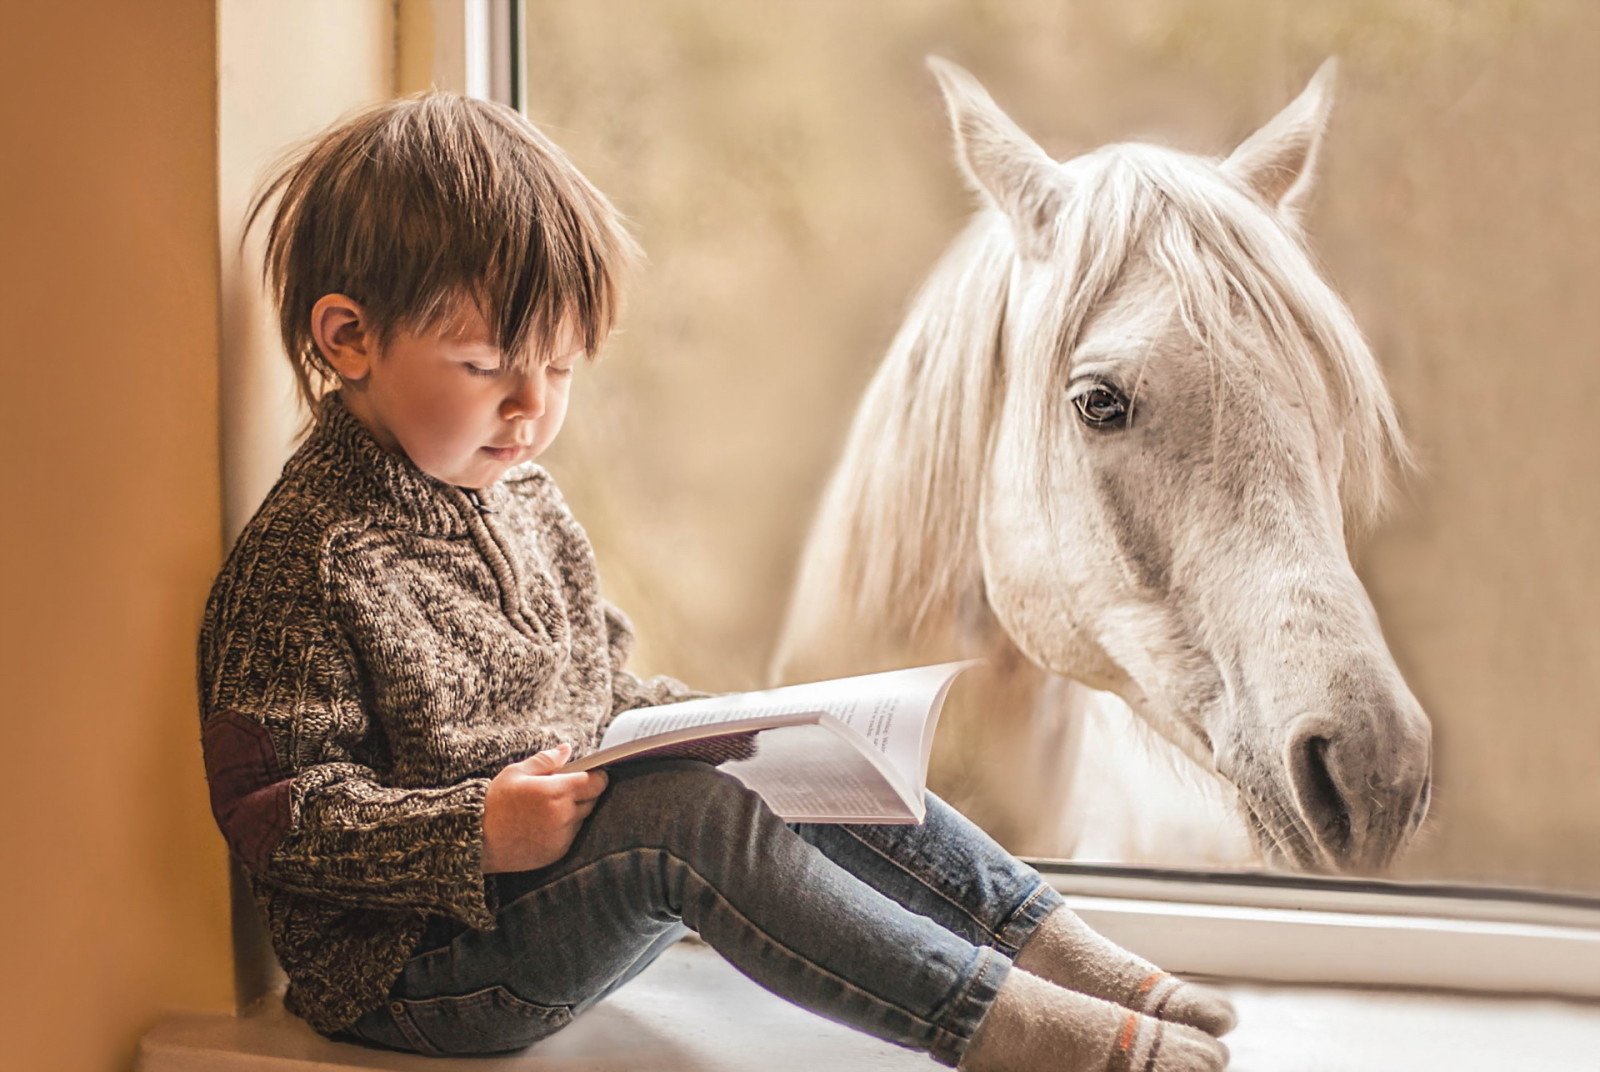 ม้า, หนังสือ, หน้าต่าง, เด็กผู้ชาย